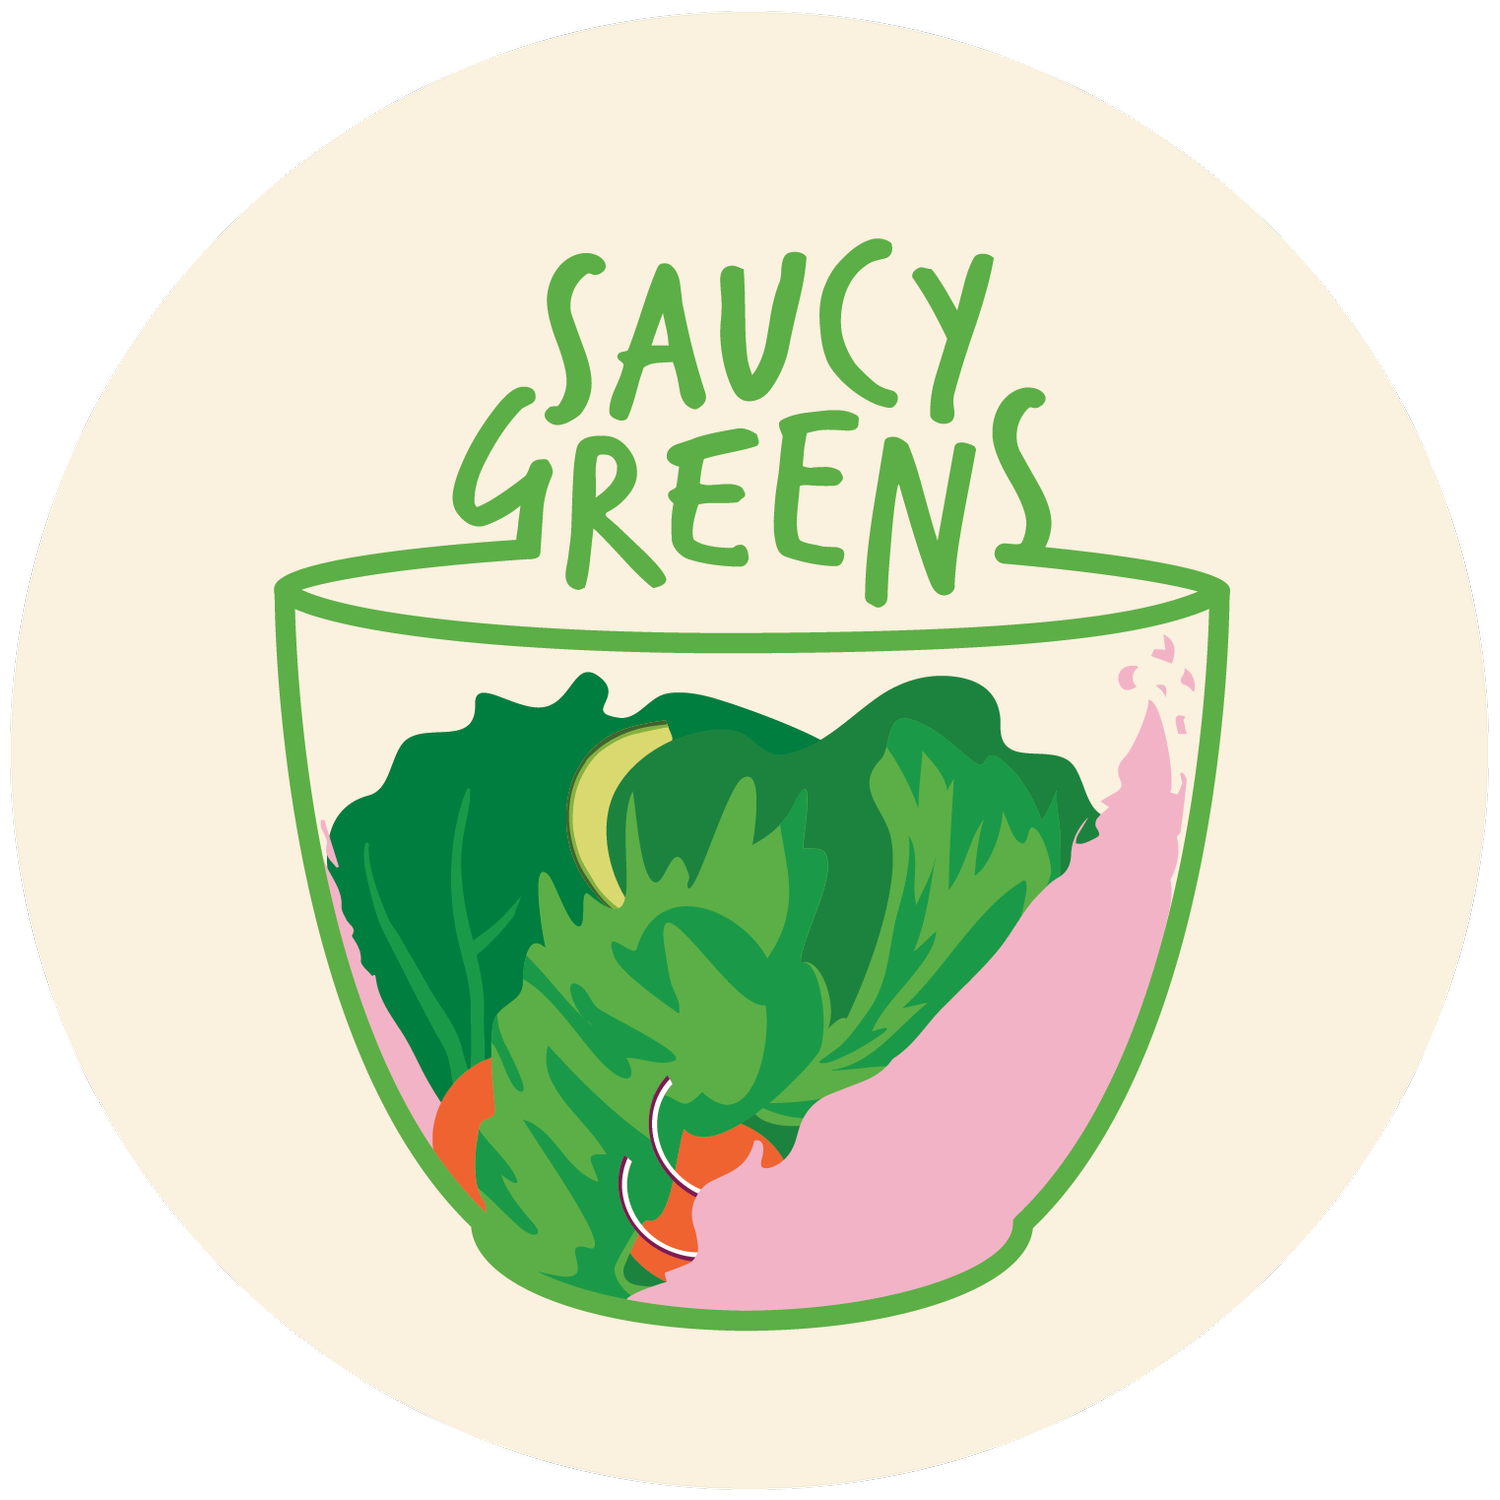 Saucy Greens Salad Shop